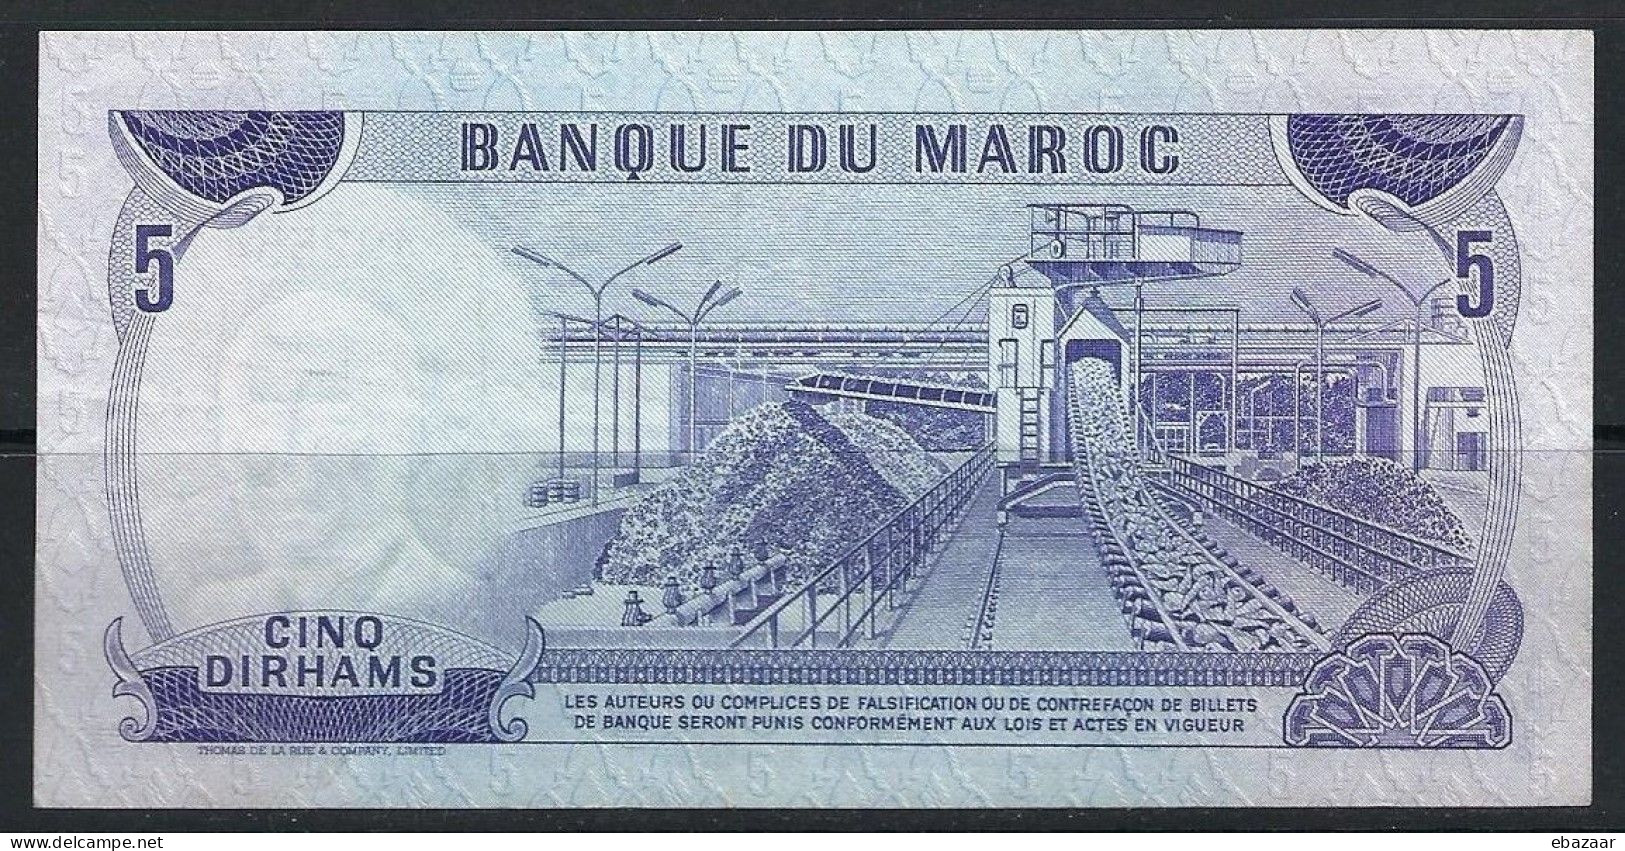 Morocco 1970 Banque Du Maroc 5 Dirhams Banknote P-56a VF++ Crisp - Marocco